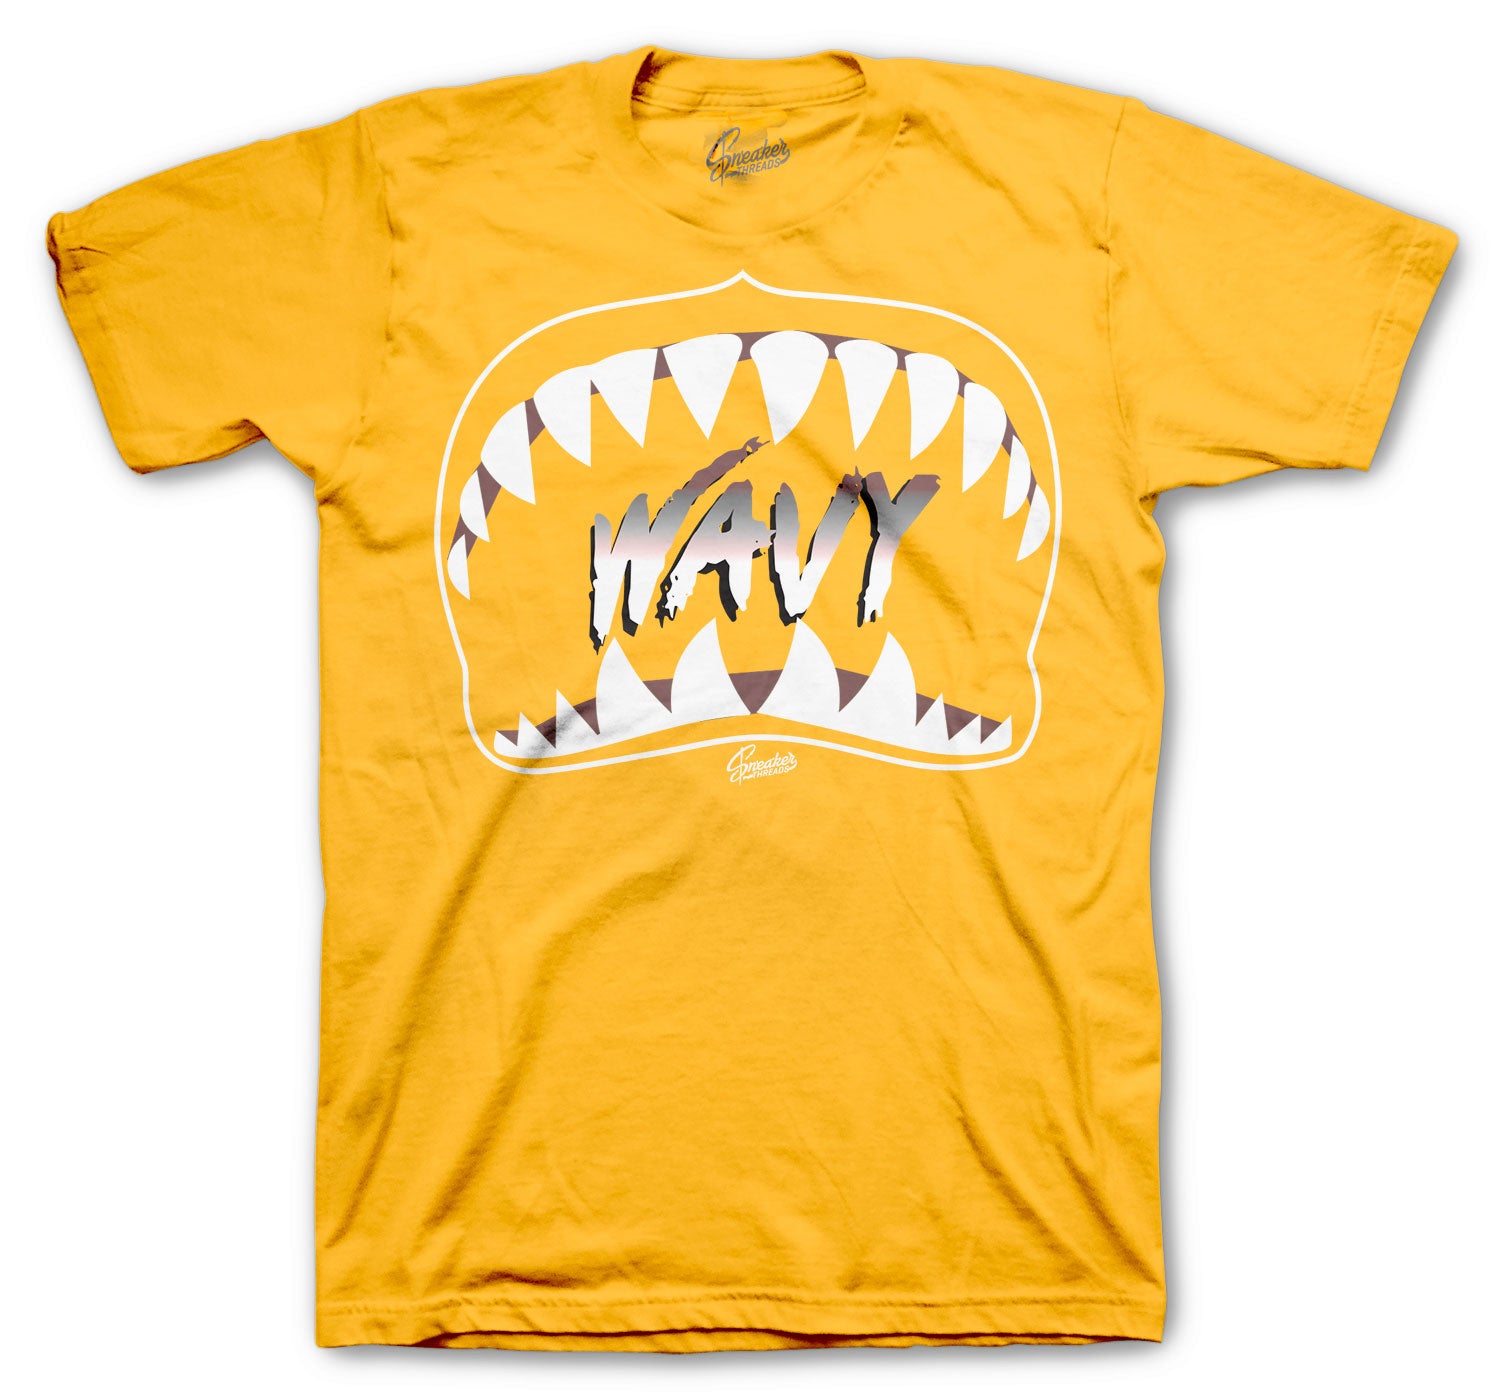 laser orange shirt Online Shopping -